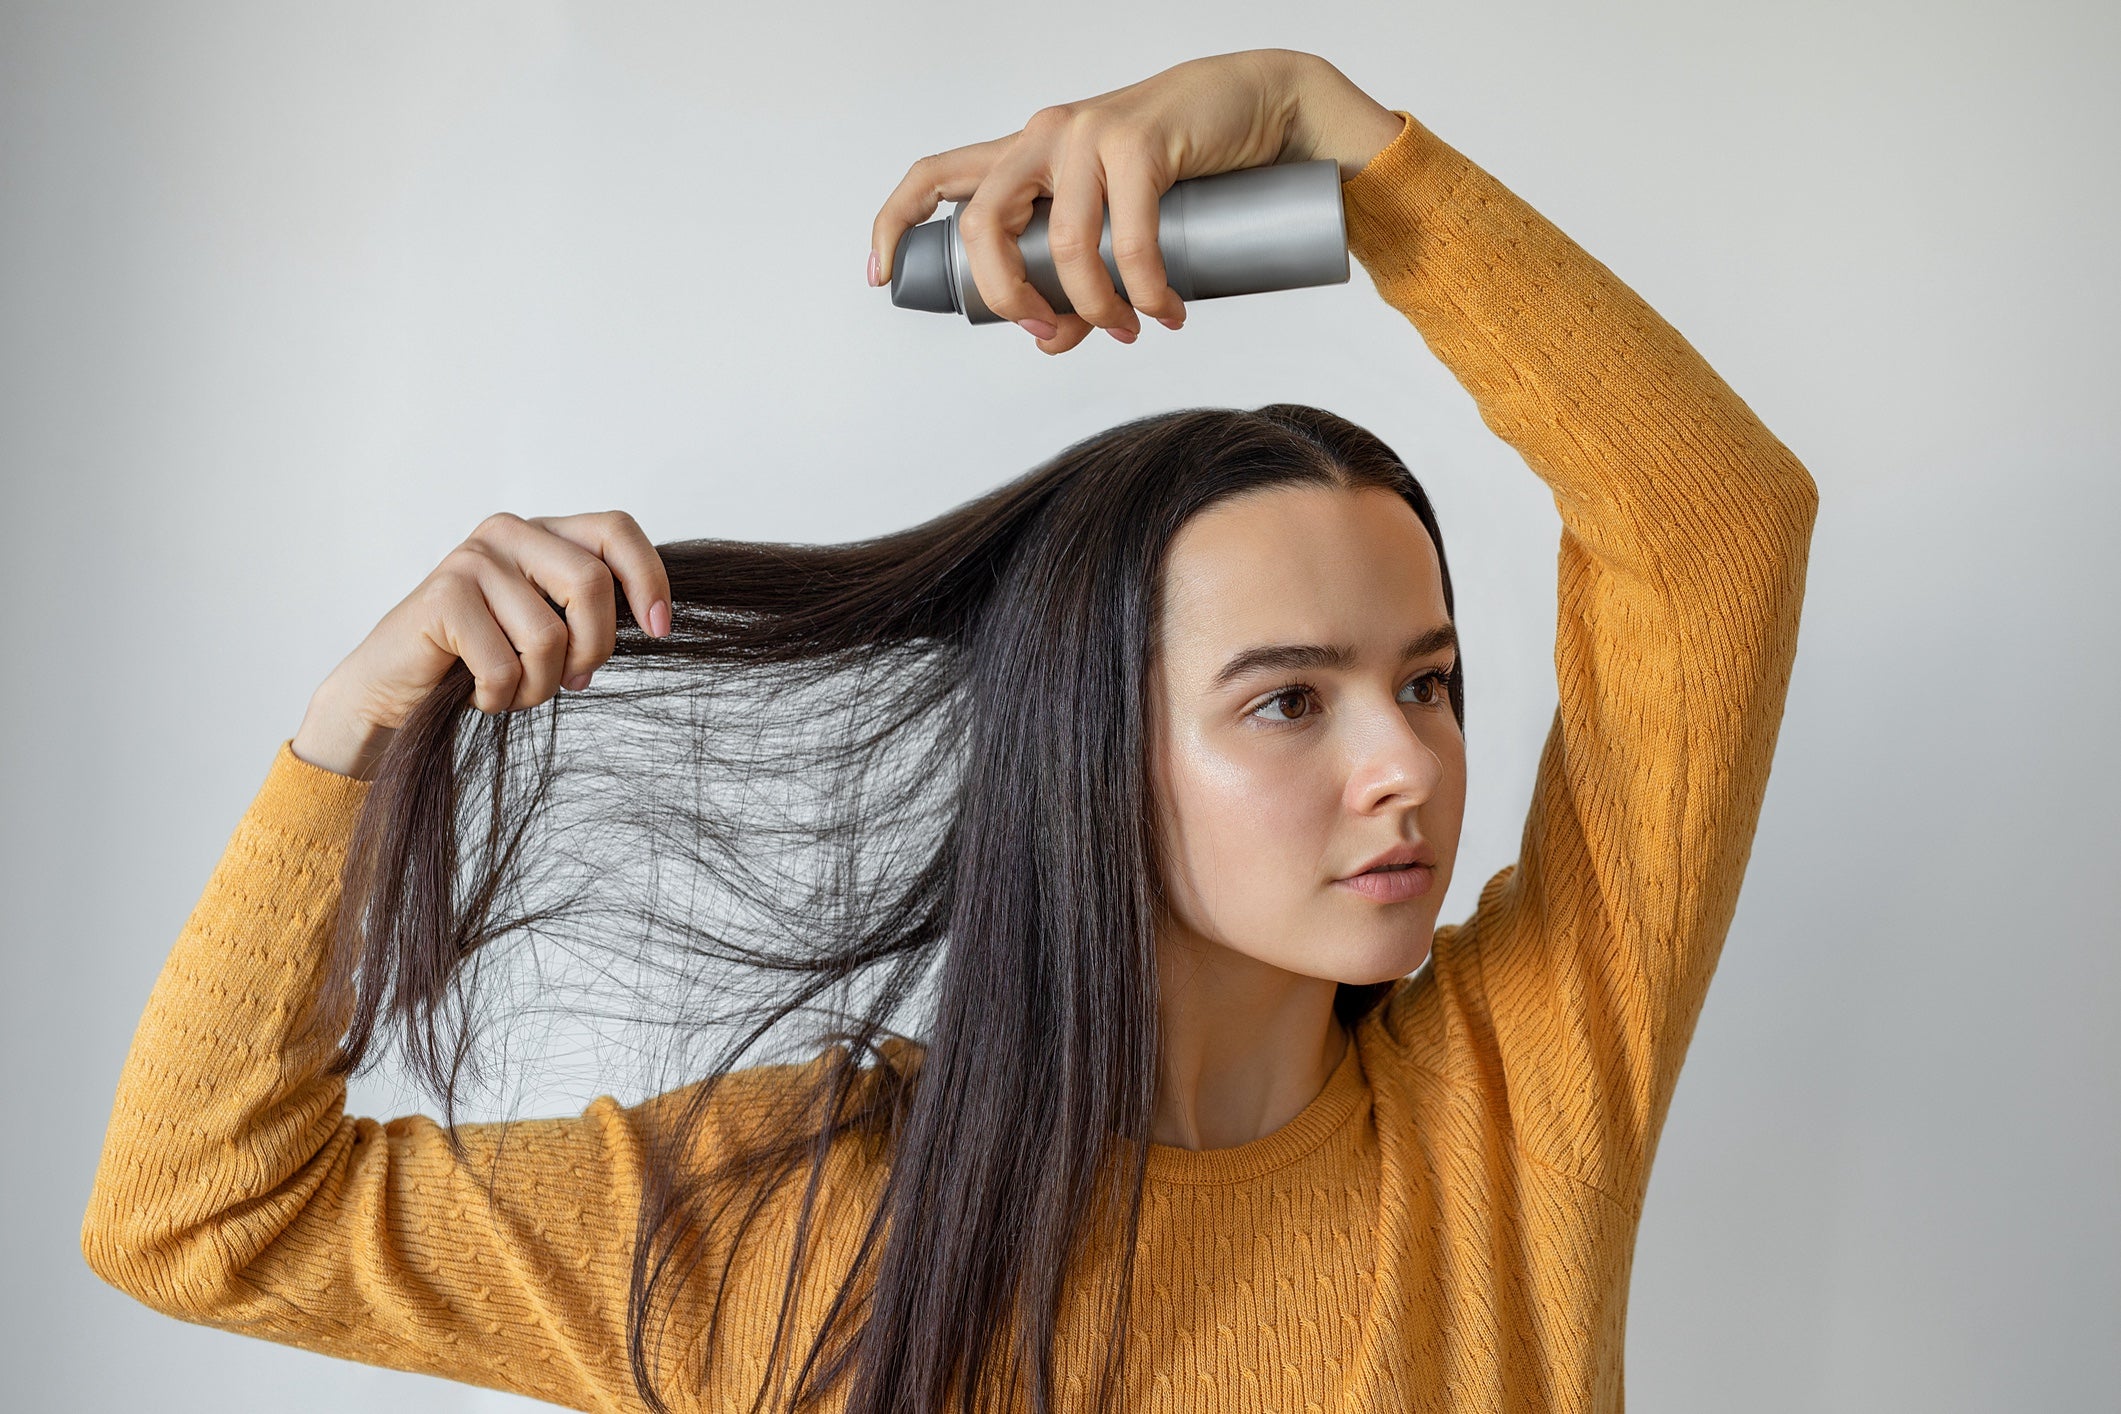 Ist Trockenshampoo schädlich? Führt das tägliche benutzen von Trockenshampoo zu Haarausfall? Was steckt eigentlich drin in dem Spray?